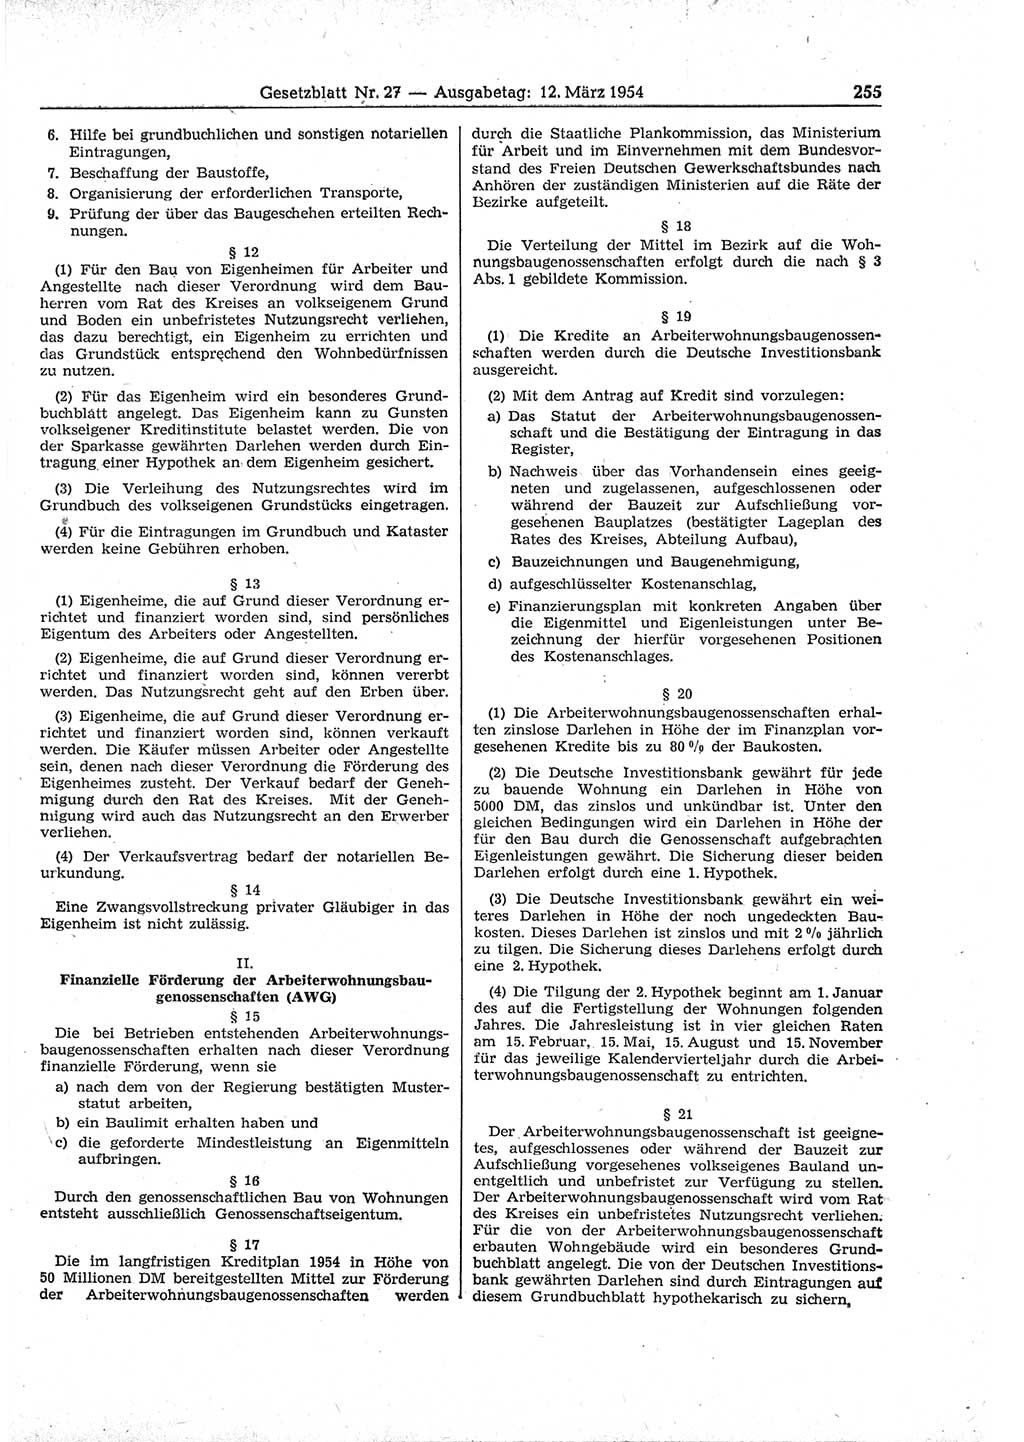 Gesetzblatt (GBl.) der Deutschen Demokratischen Republik (DDR) 1954, Seite 255 (GBl. DDR 1954, S. 255)